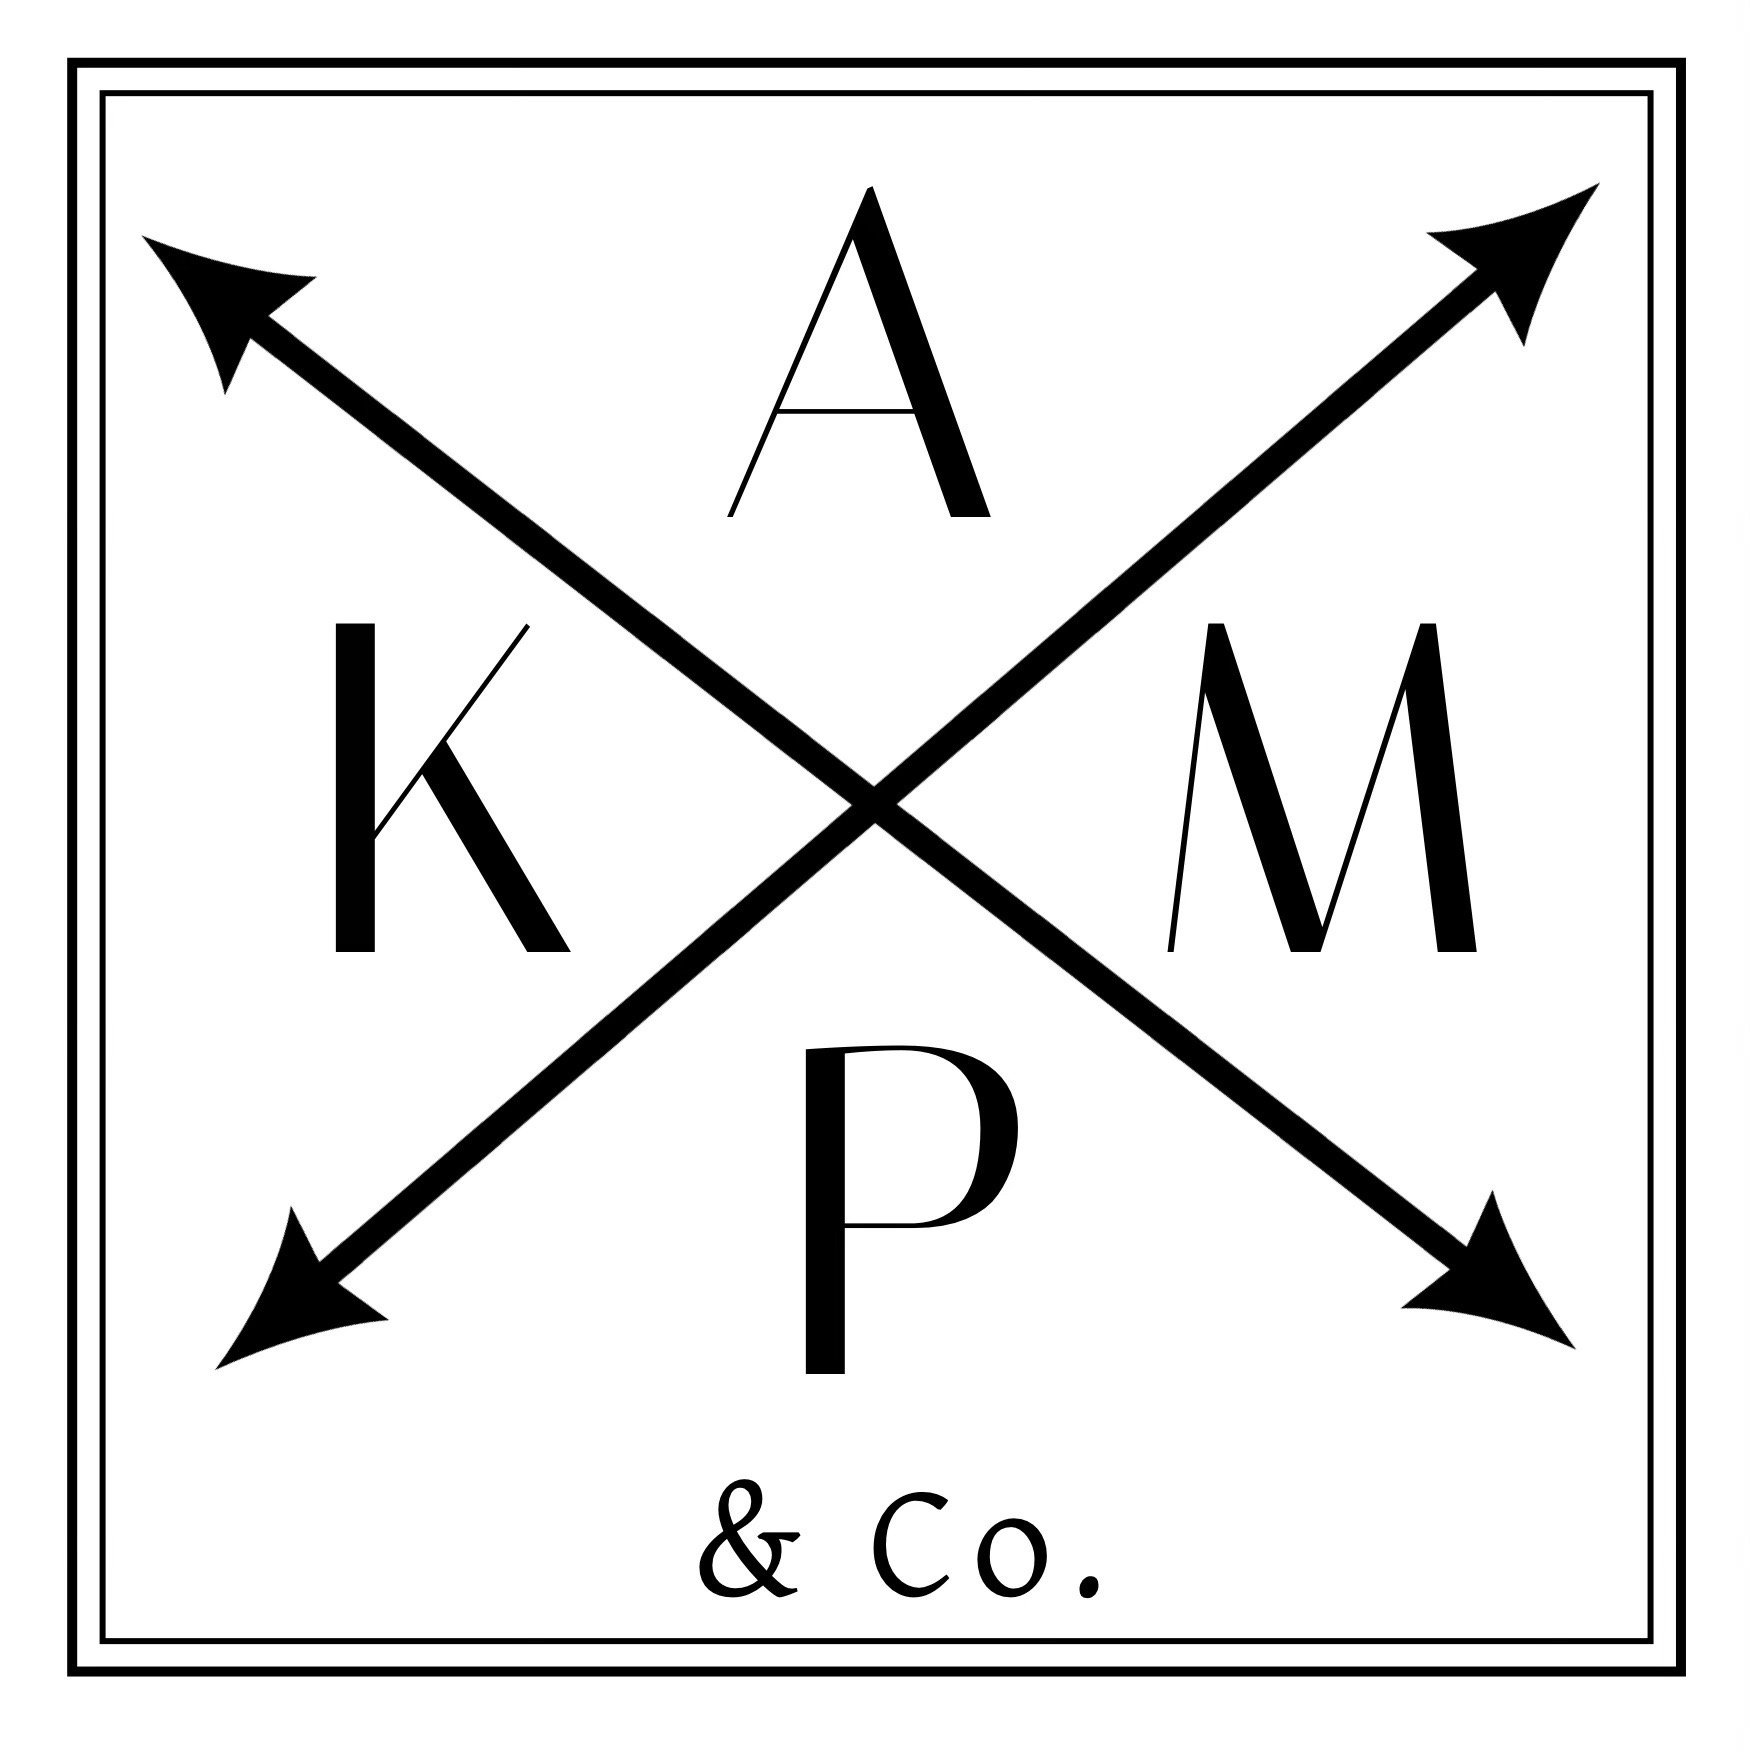 Kamp & Co Logo